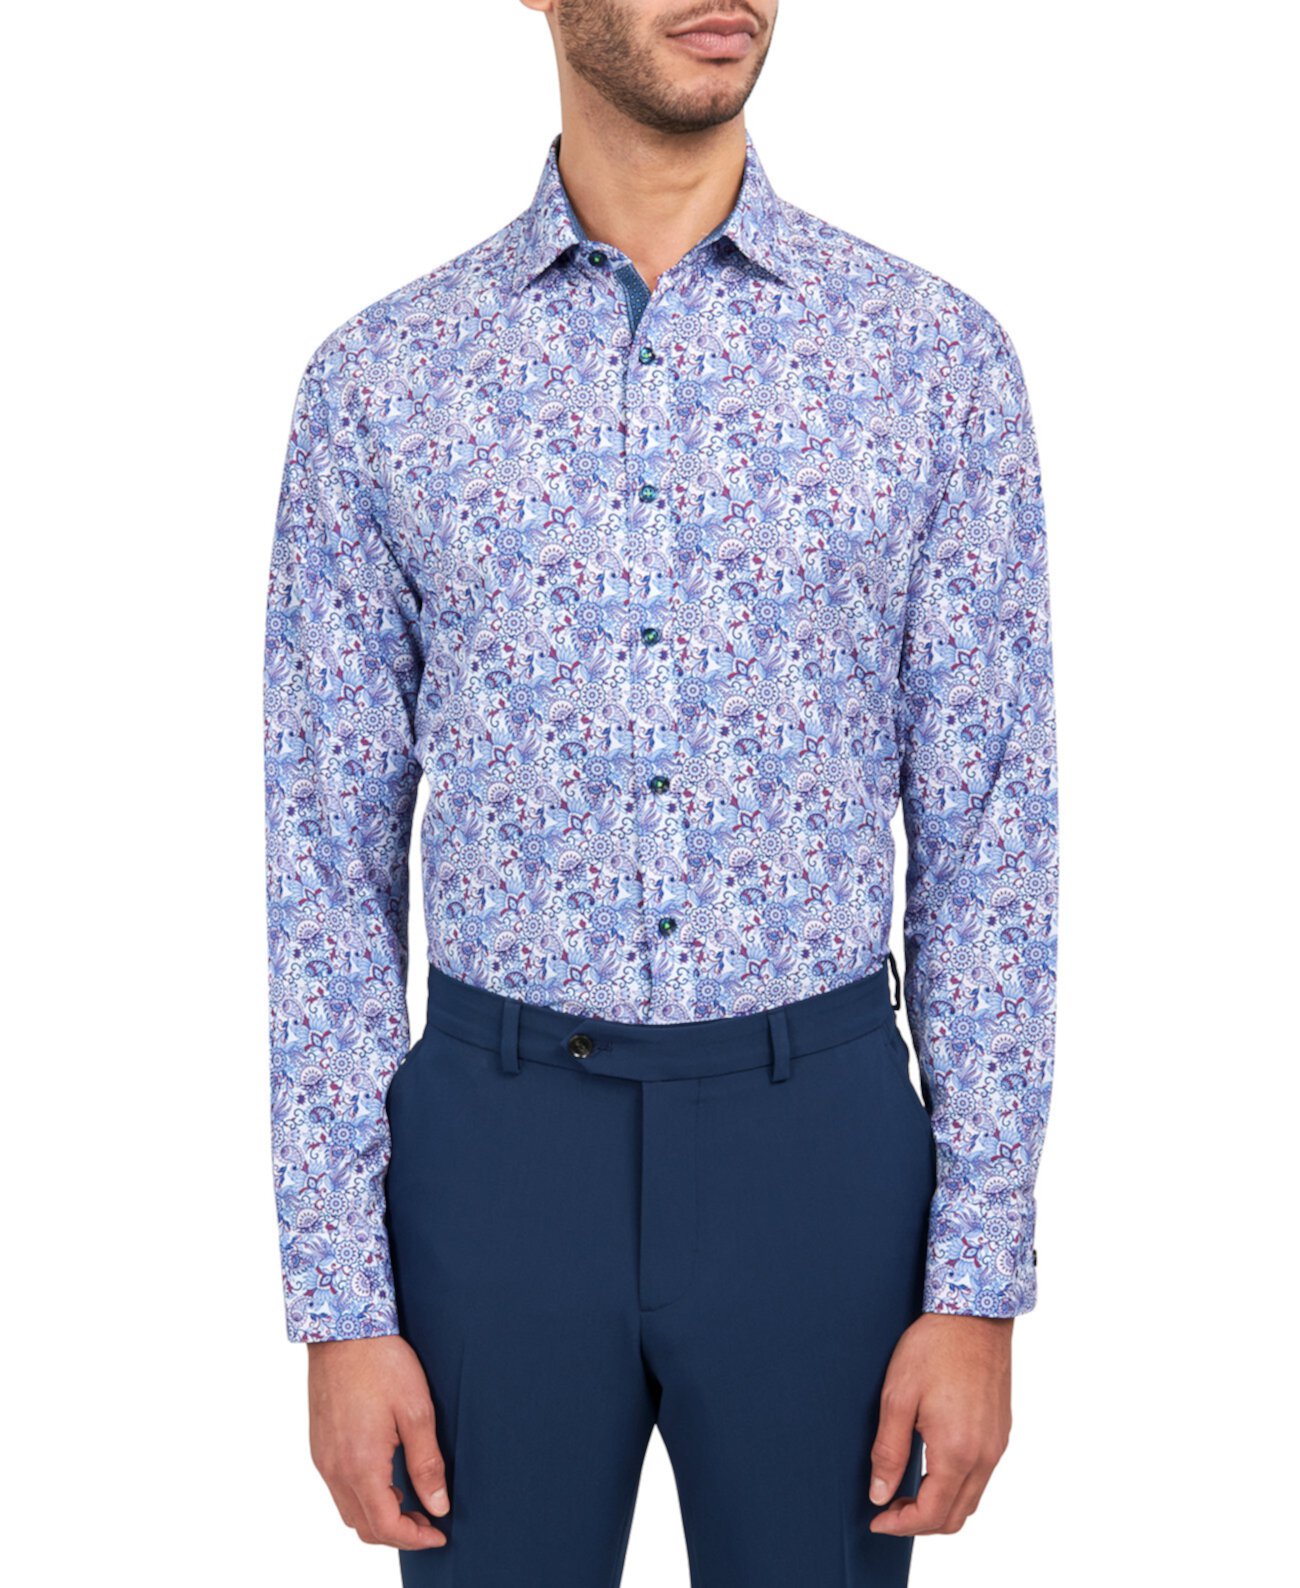 Мужская классическая рубашка обычного кроя с узором пейсли Performance Society of Threads